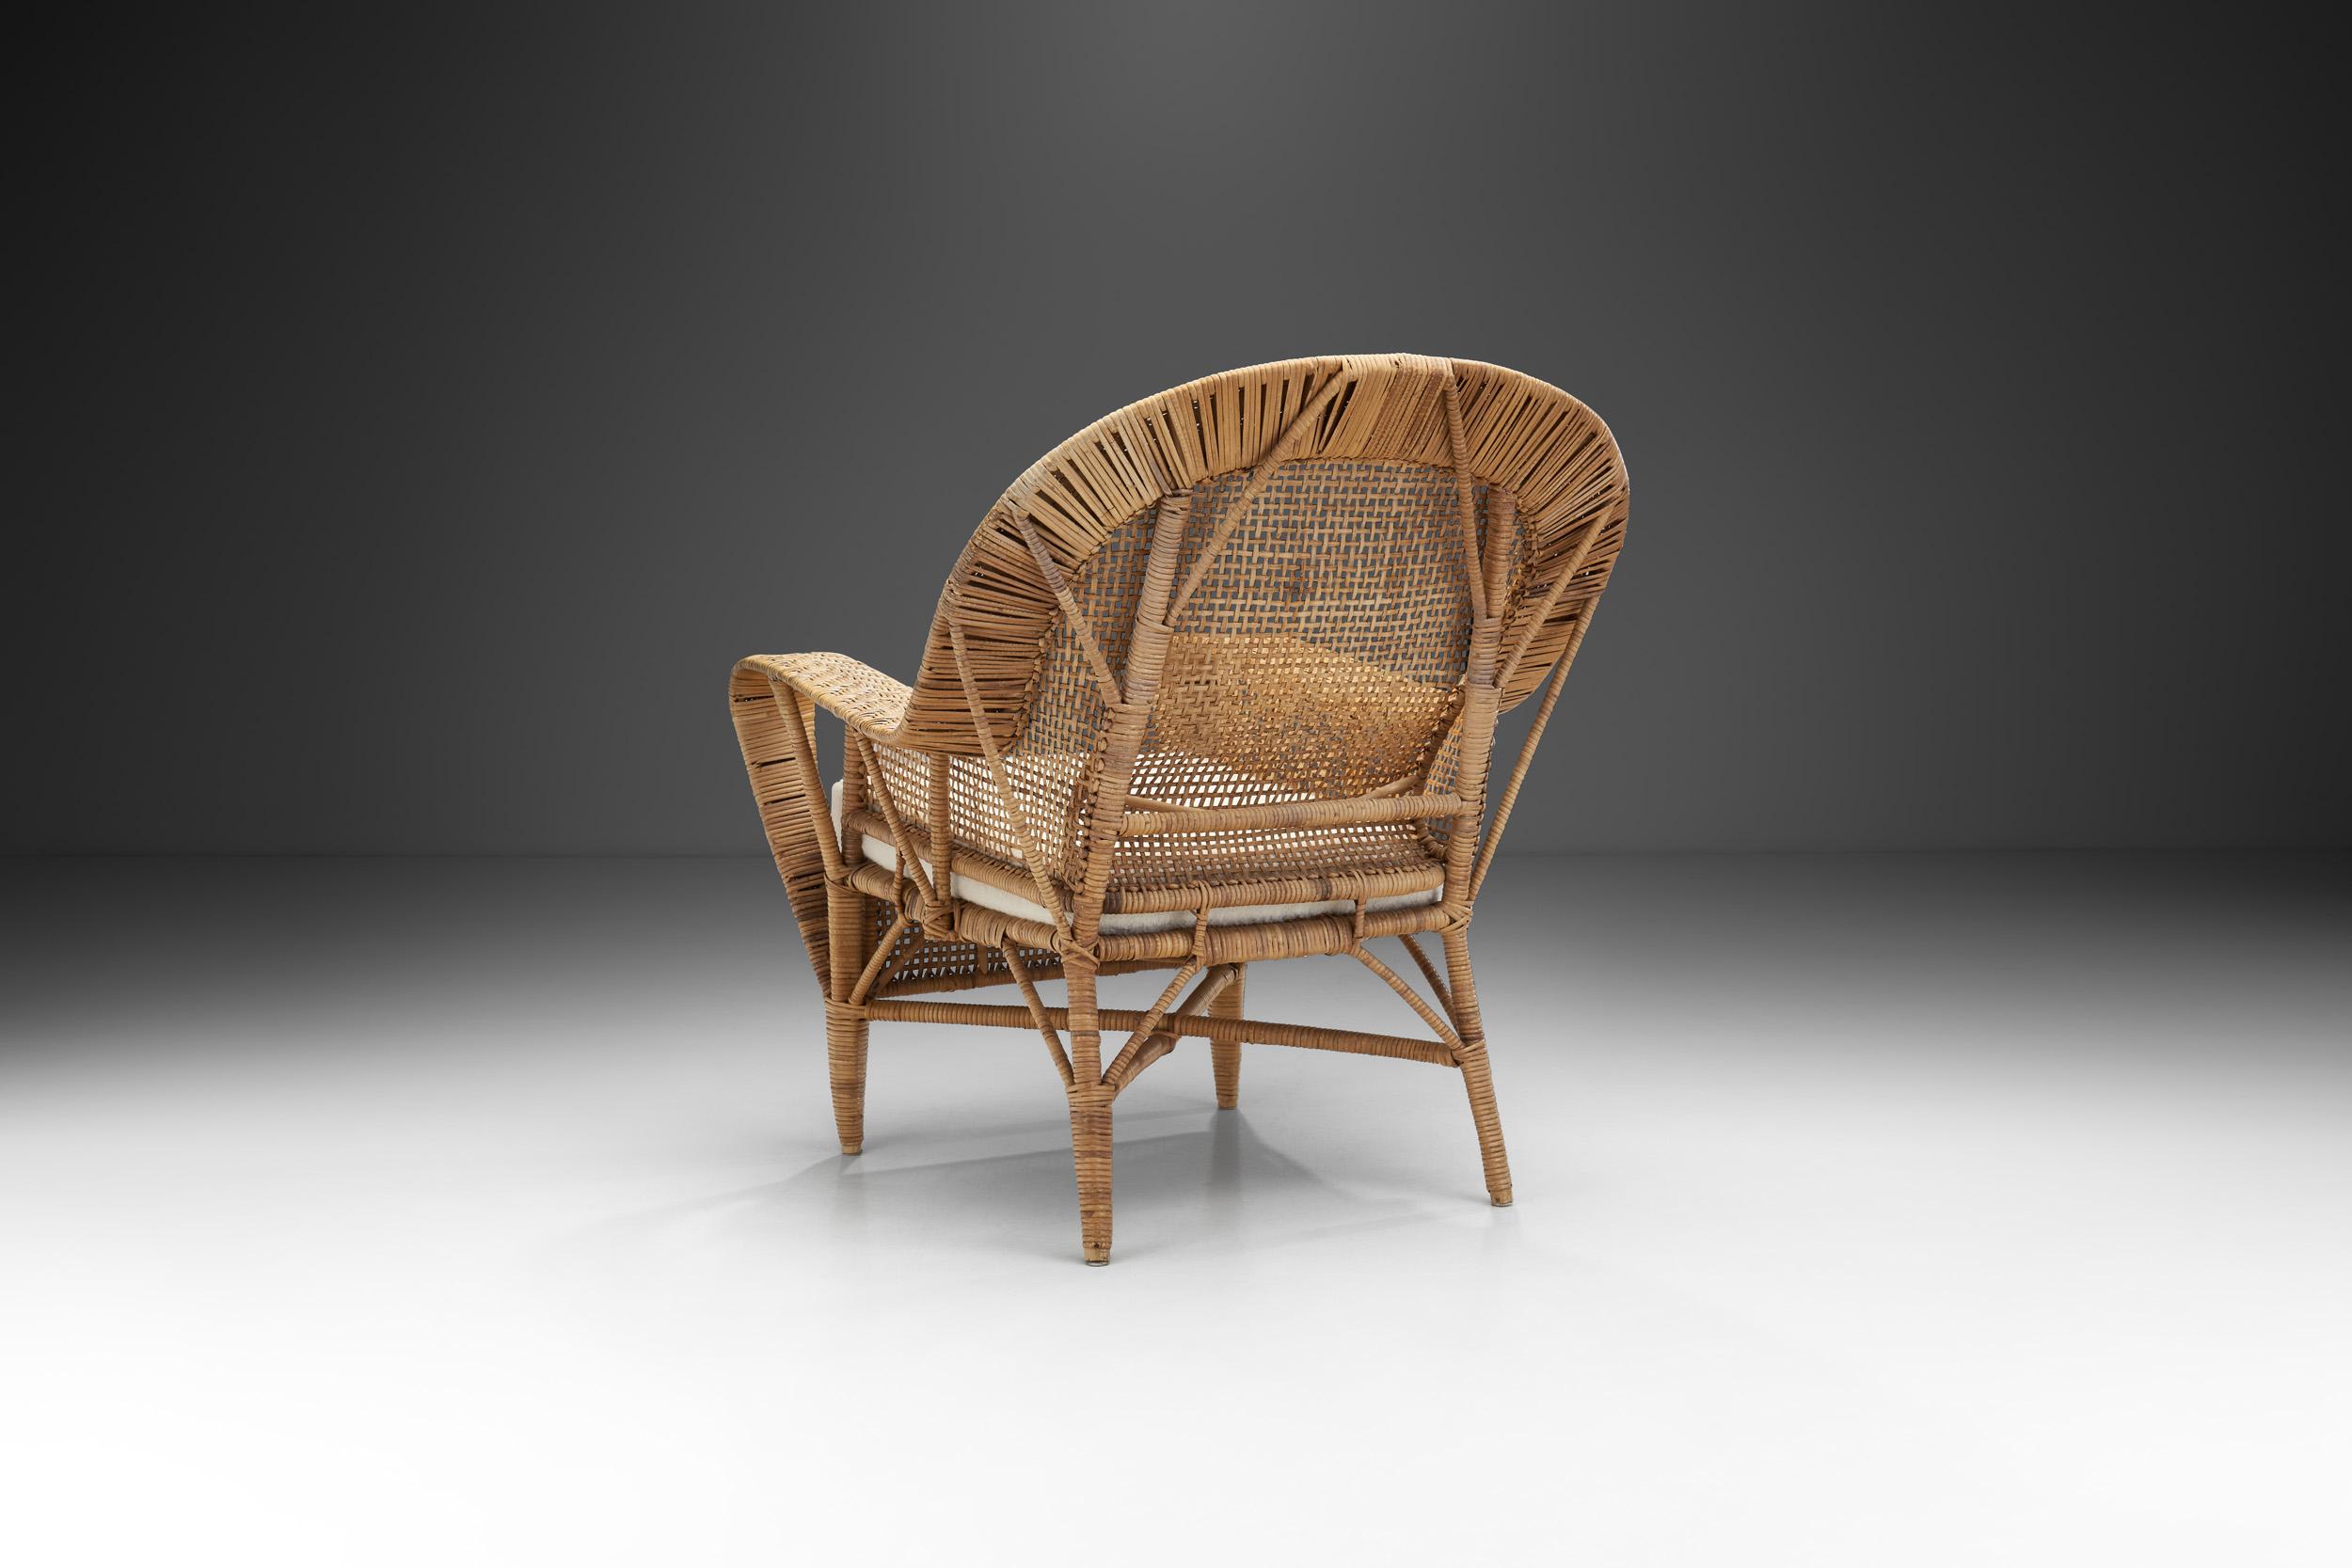 Danish Kay Fisker “Canton” Woven Wicker Lounge Chair for Robert Wengler, Denmark 1950s For Sale